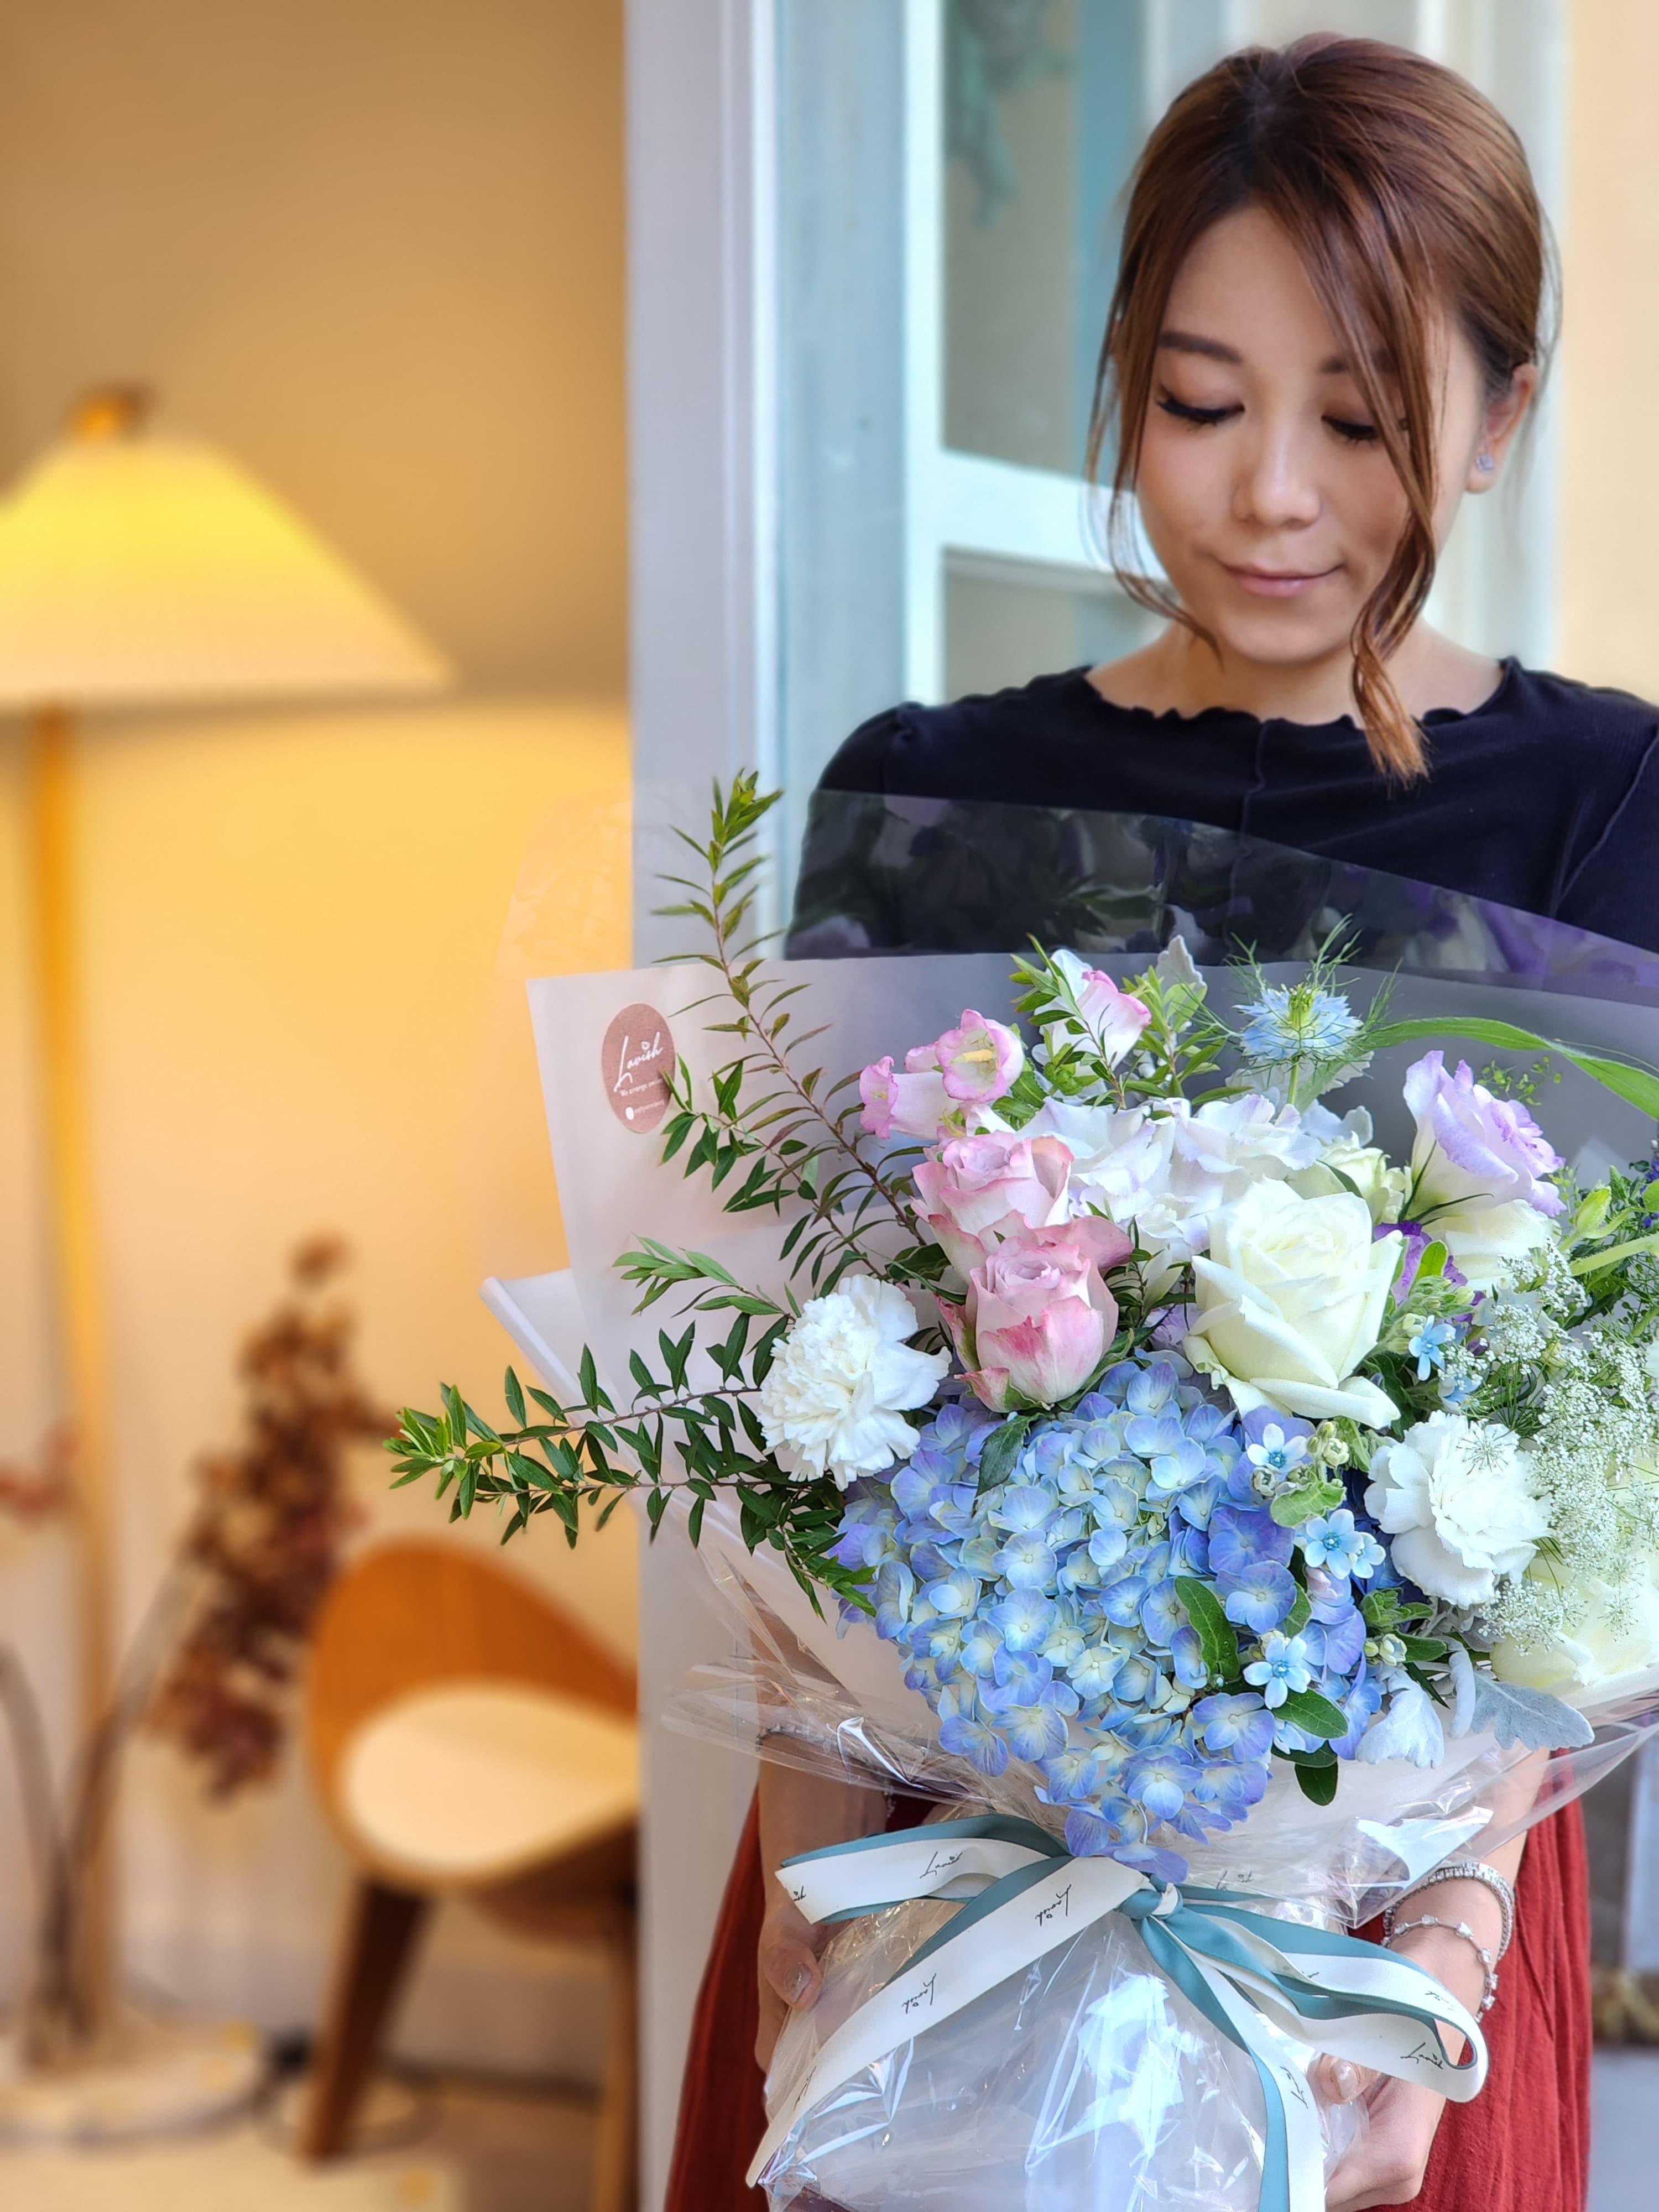 Lavish Florist 網上花店 香港花店 即日送花 送花服務 網上訂花 花束 香港